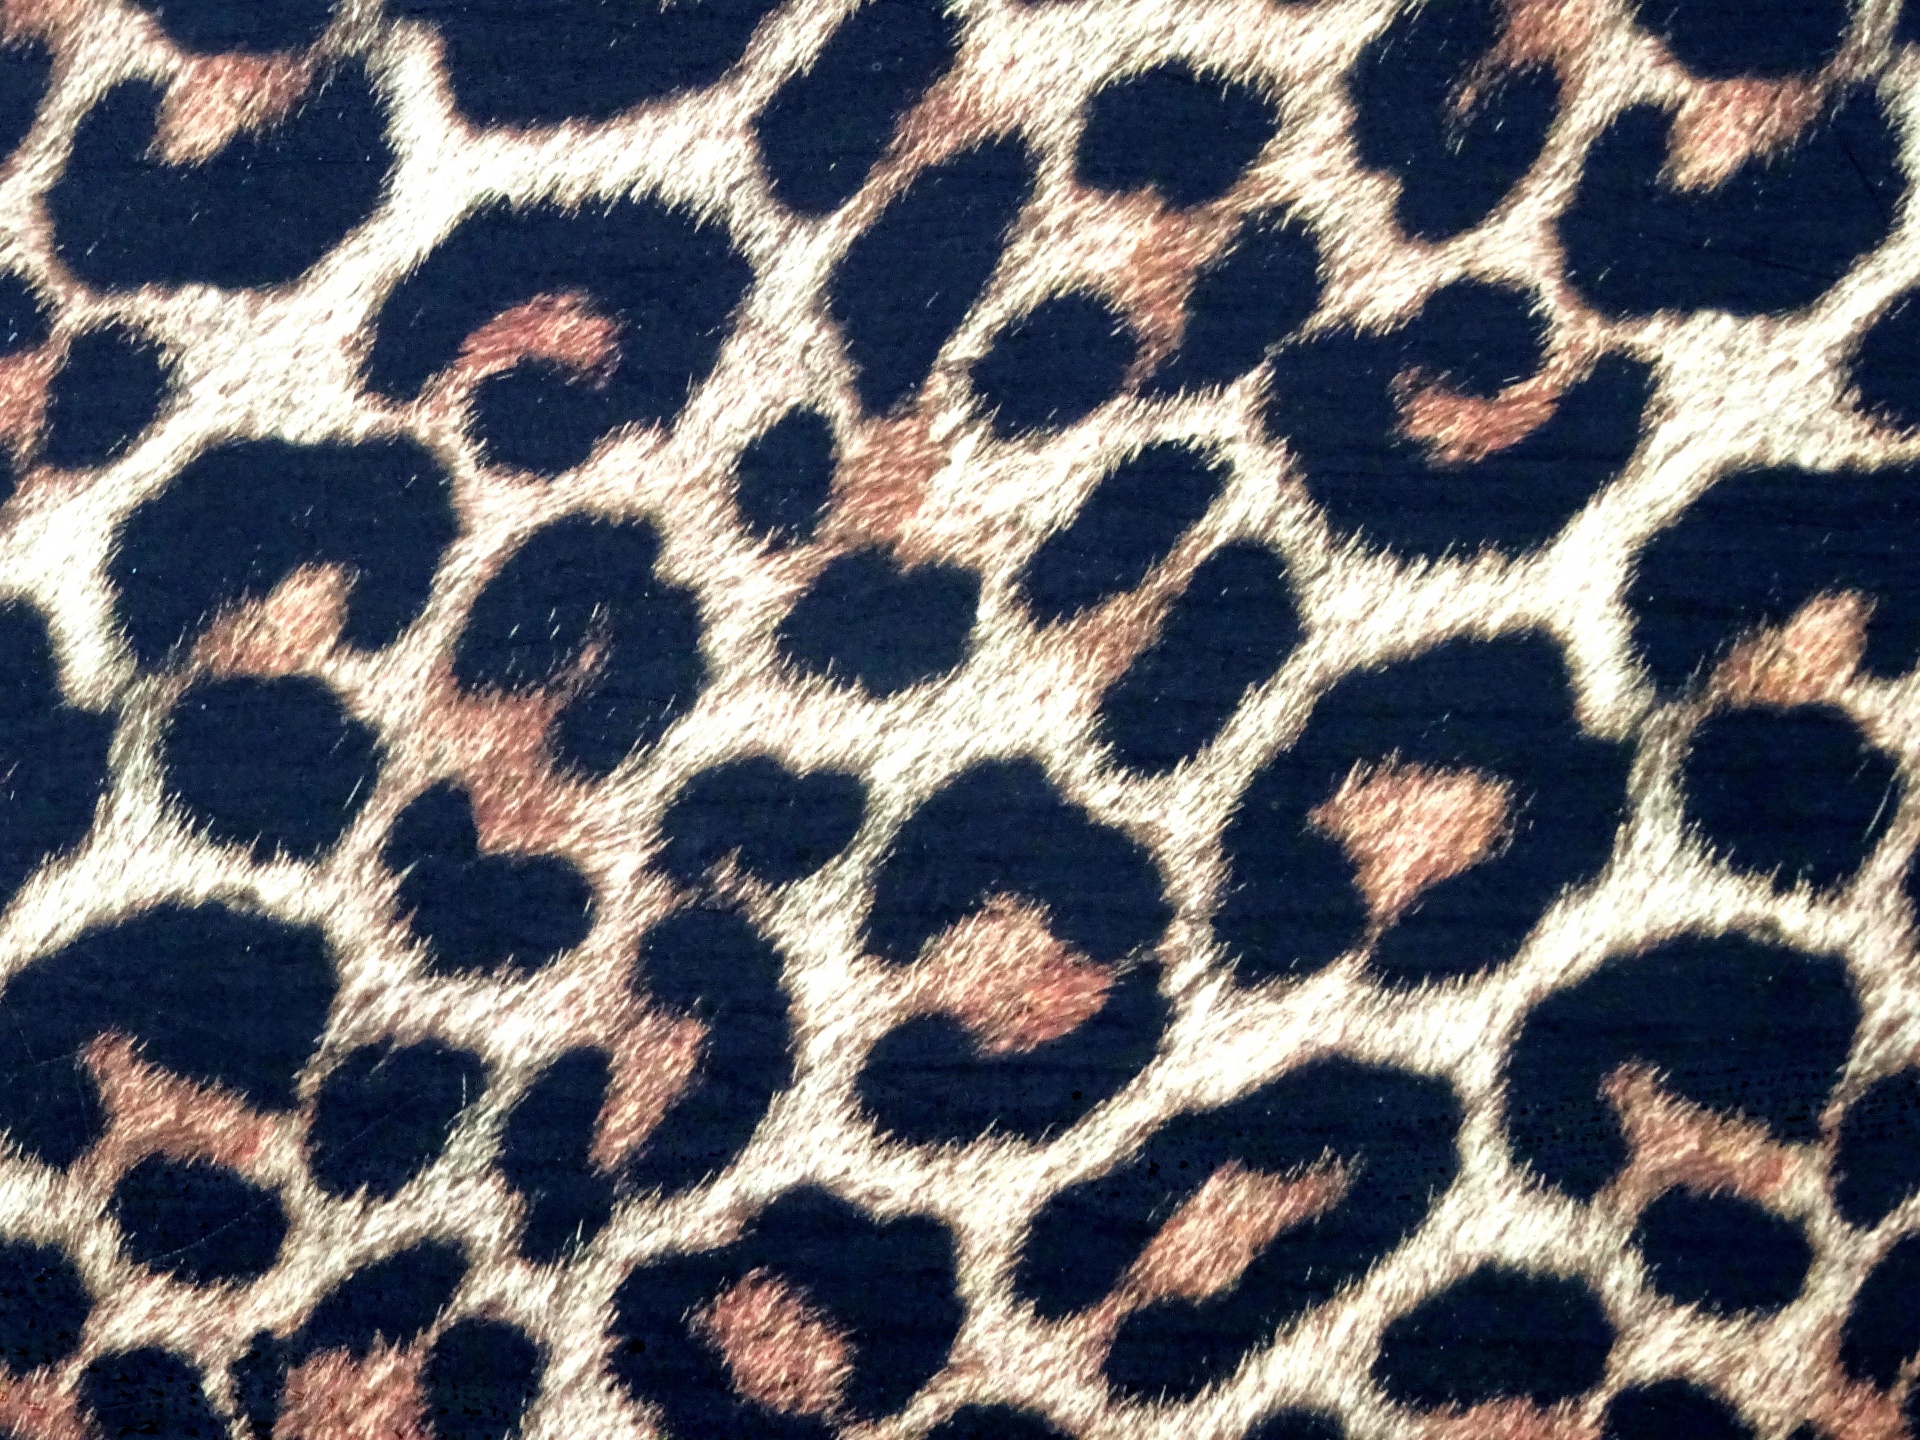 Leopard piele de fundal